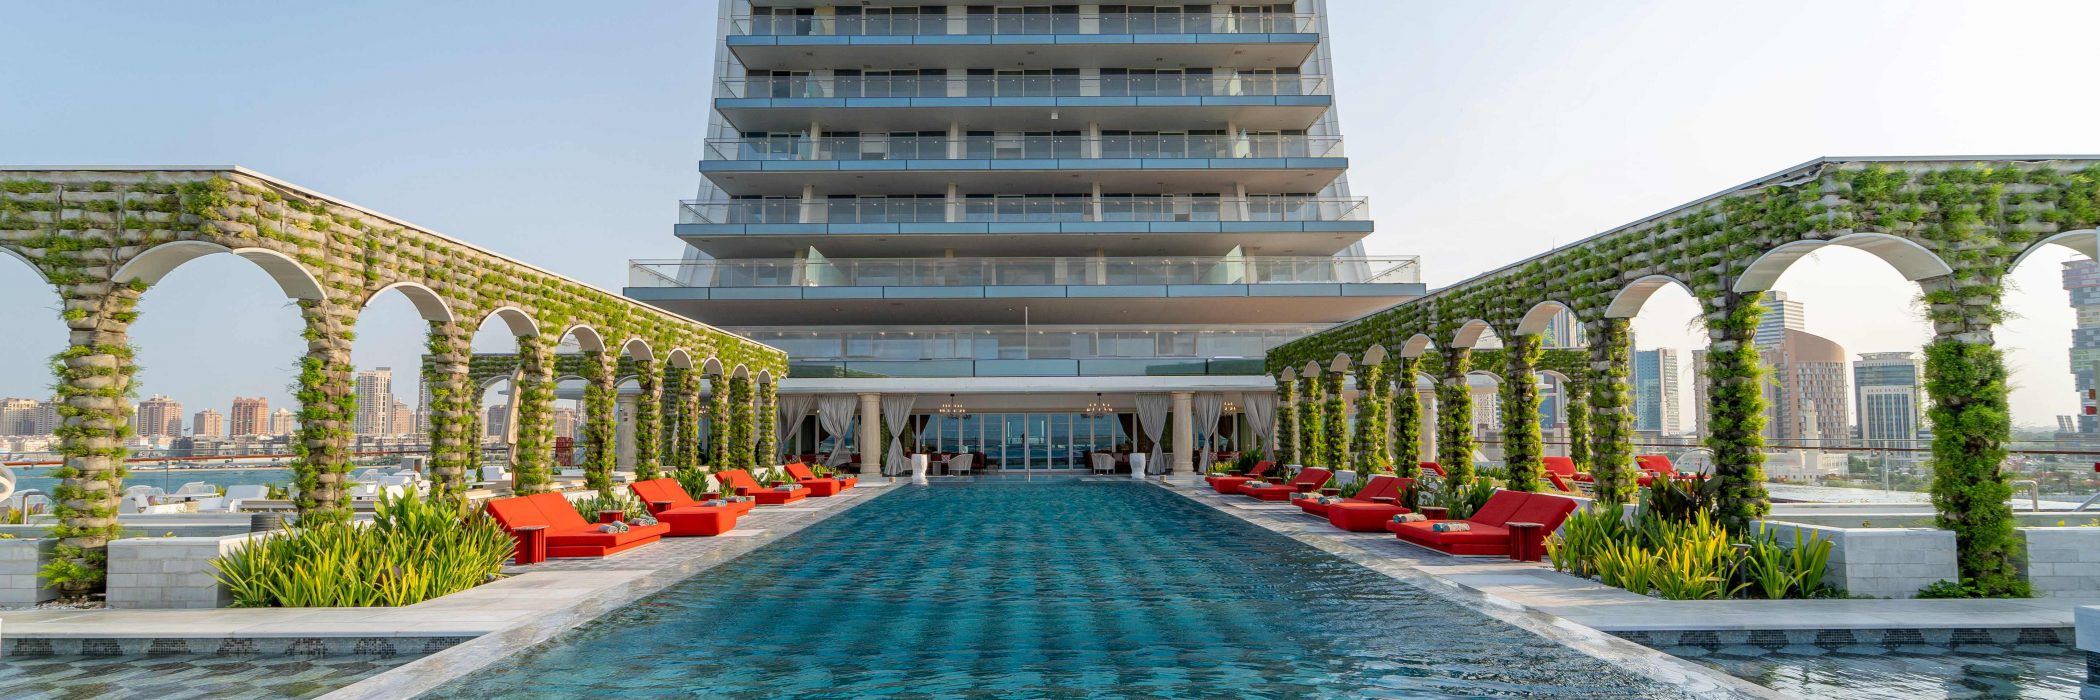 Raffles Doha - Aqua Urban Deck – Pool Pass & Aqualuxe Cabana